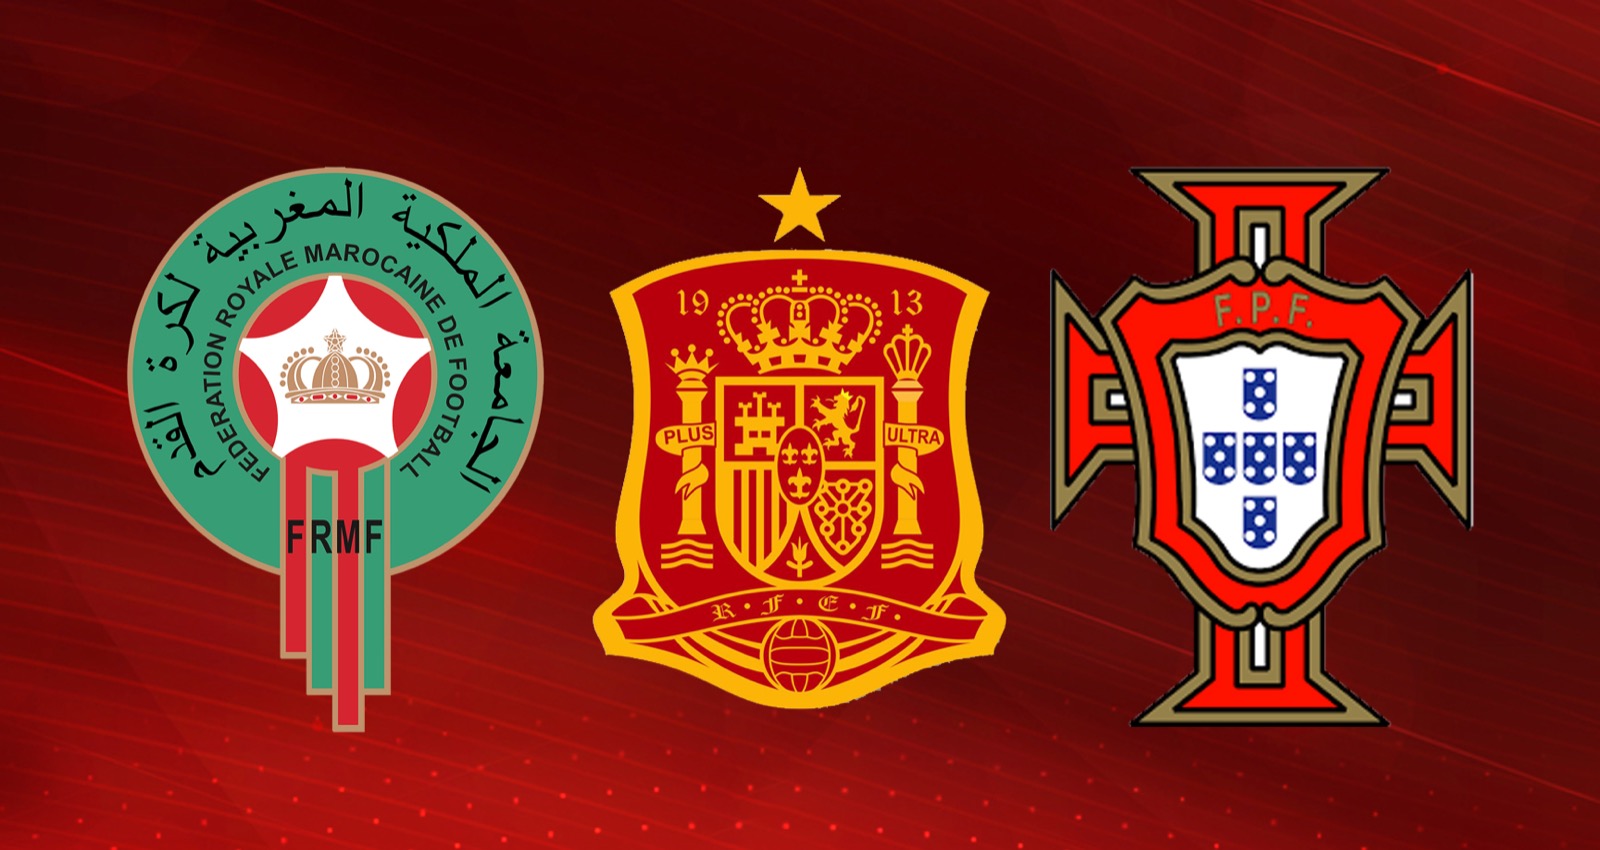 ٢١٤٢٢٥ اجتماع ثلاثي بين اتحادات المغرب وإسبانيا والبرتغال لحسم ملف تنظيم كأس العالم 2030